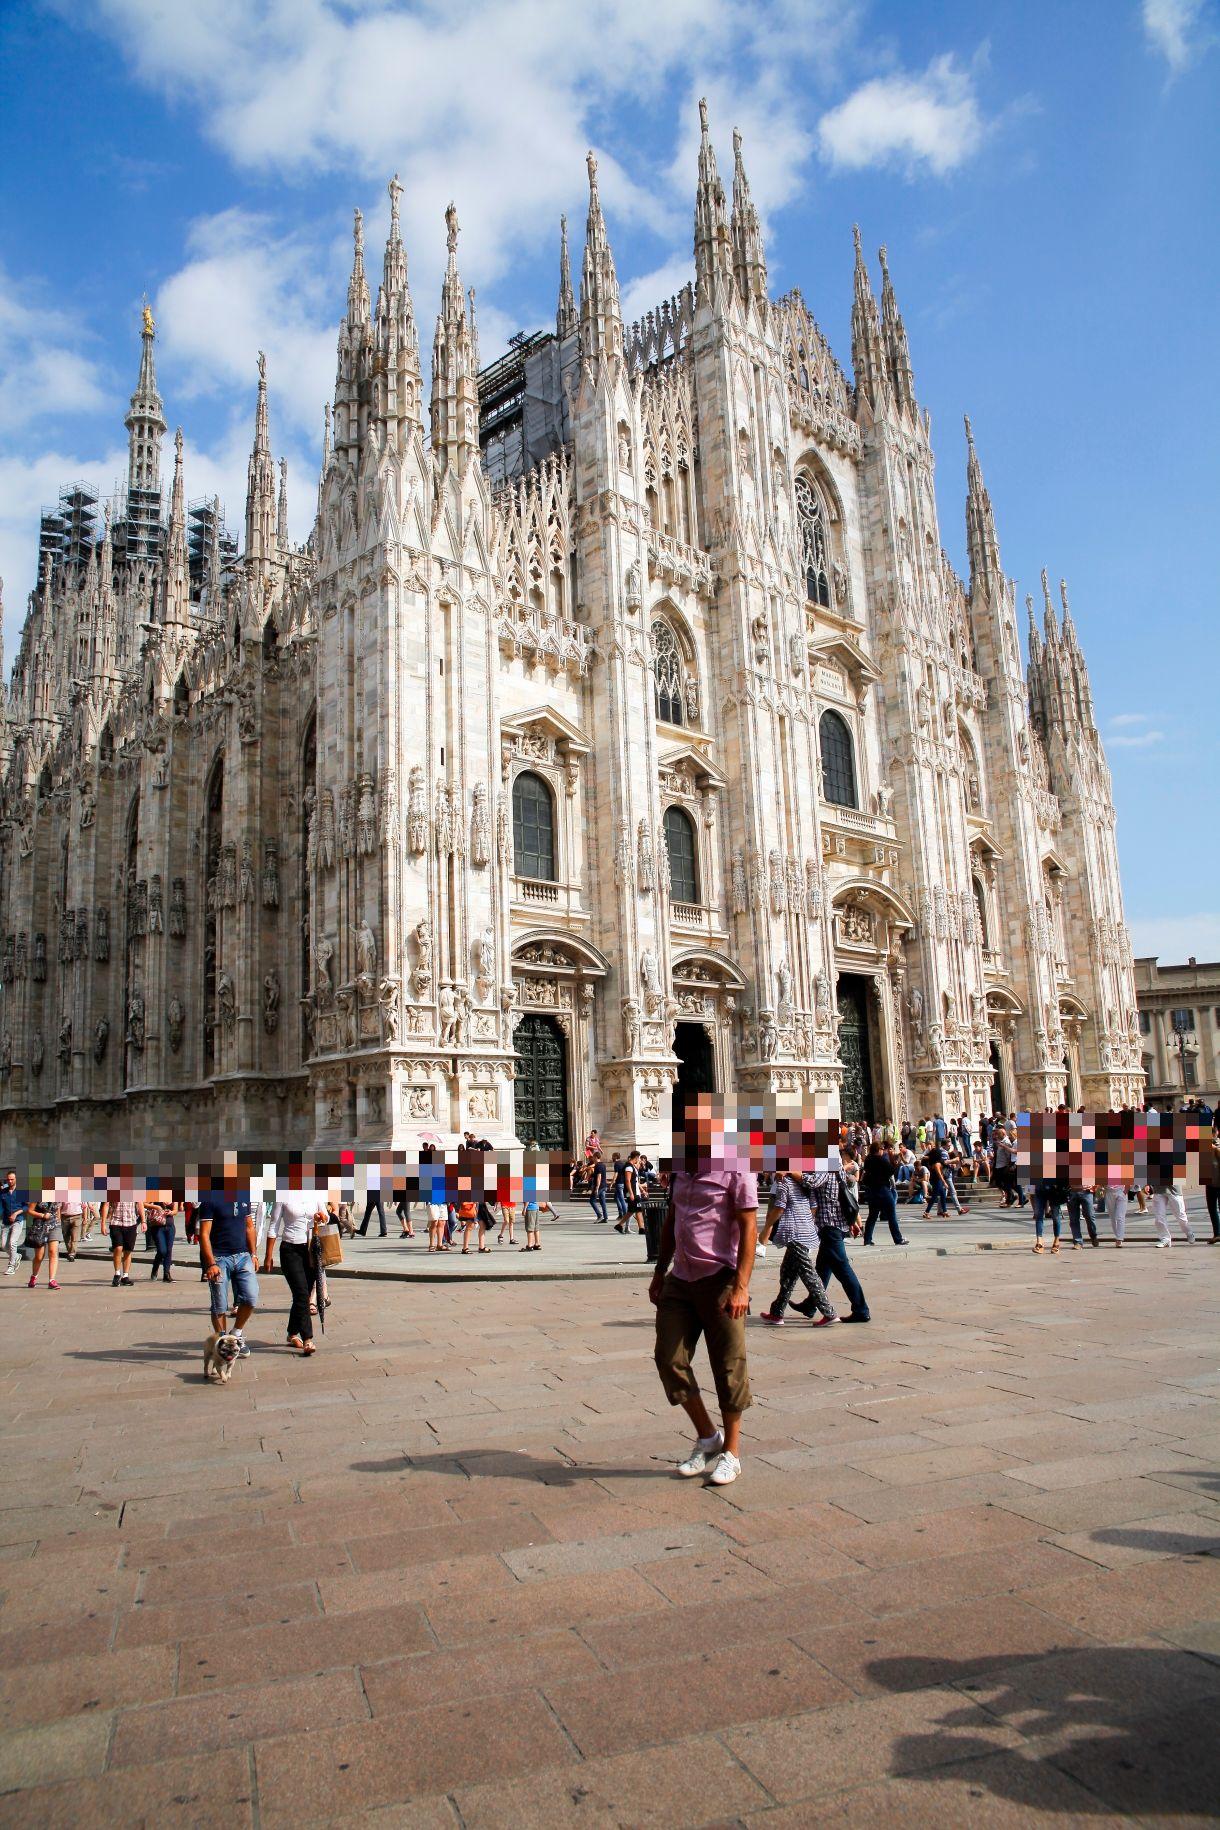 大 聖堂 ミラノ ミラノ大聖堂を紹介、チケット購入、入場方法、屋上の昇り方